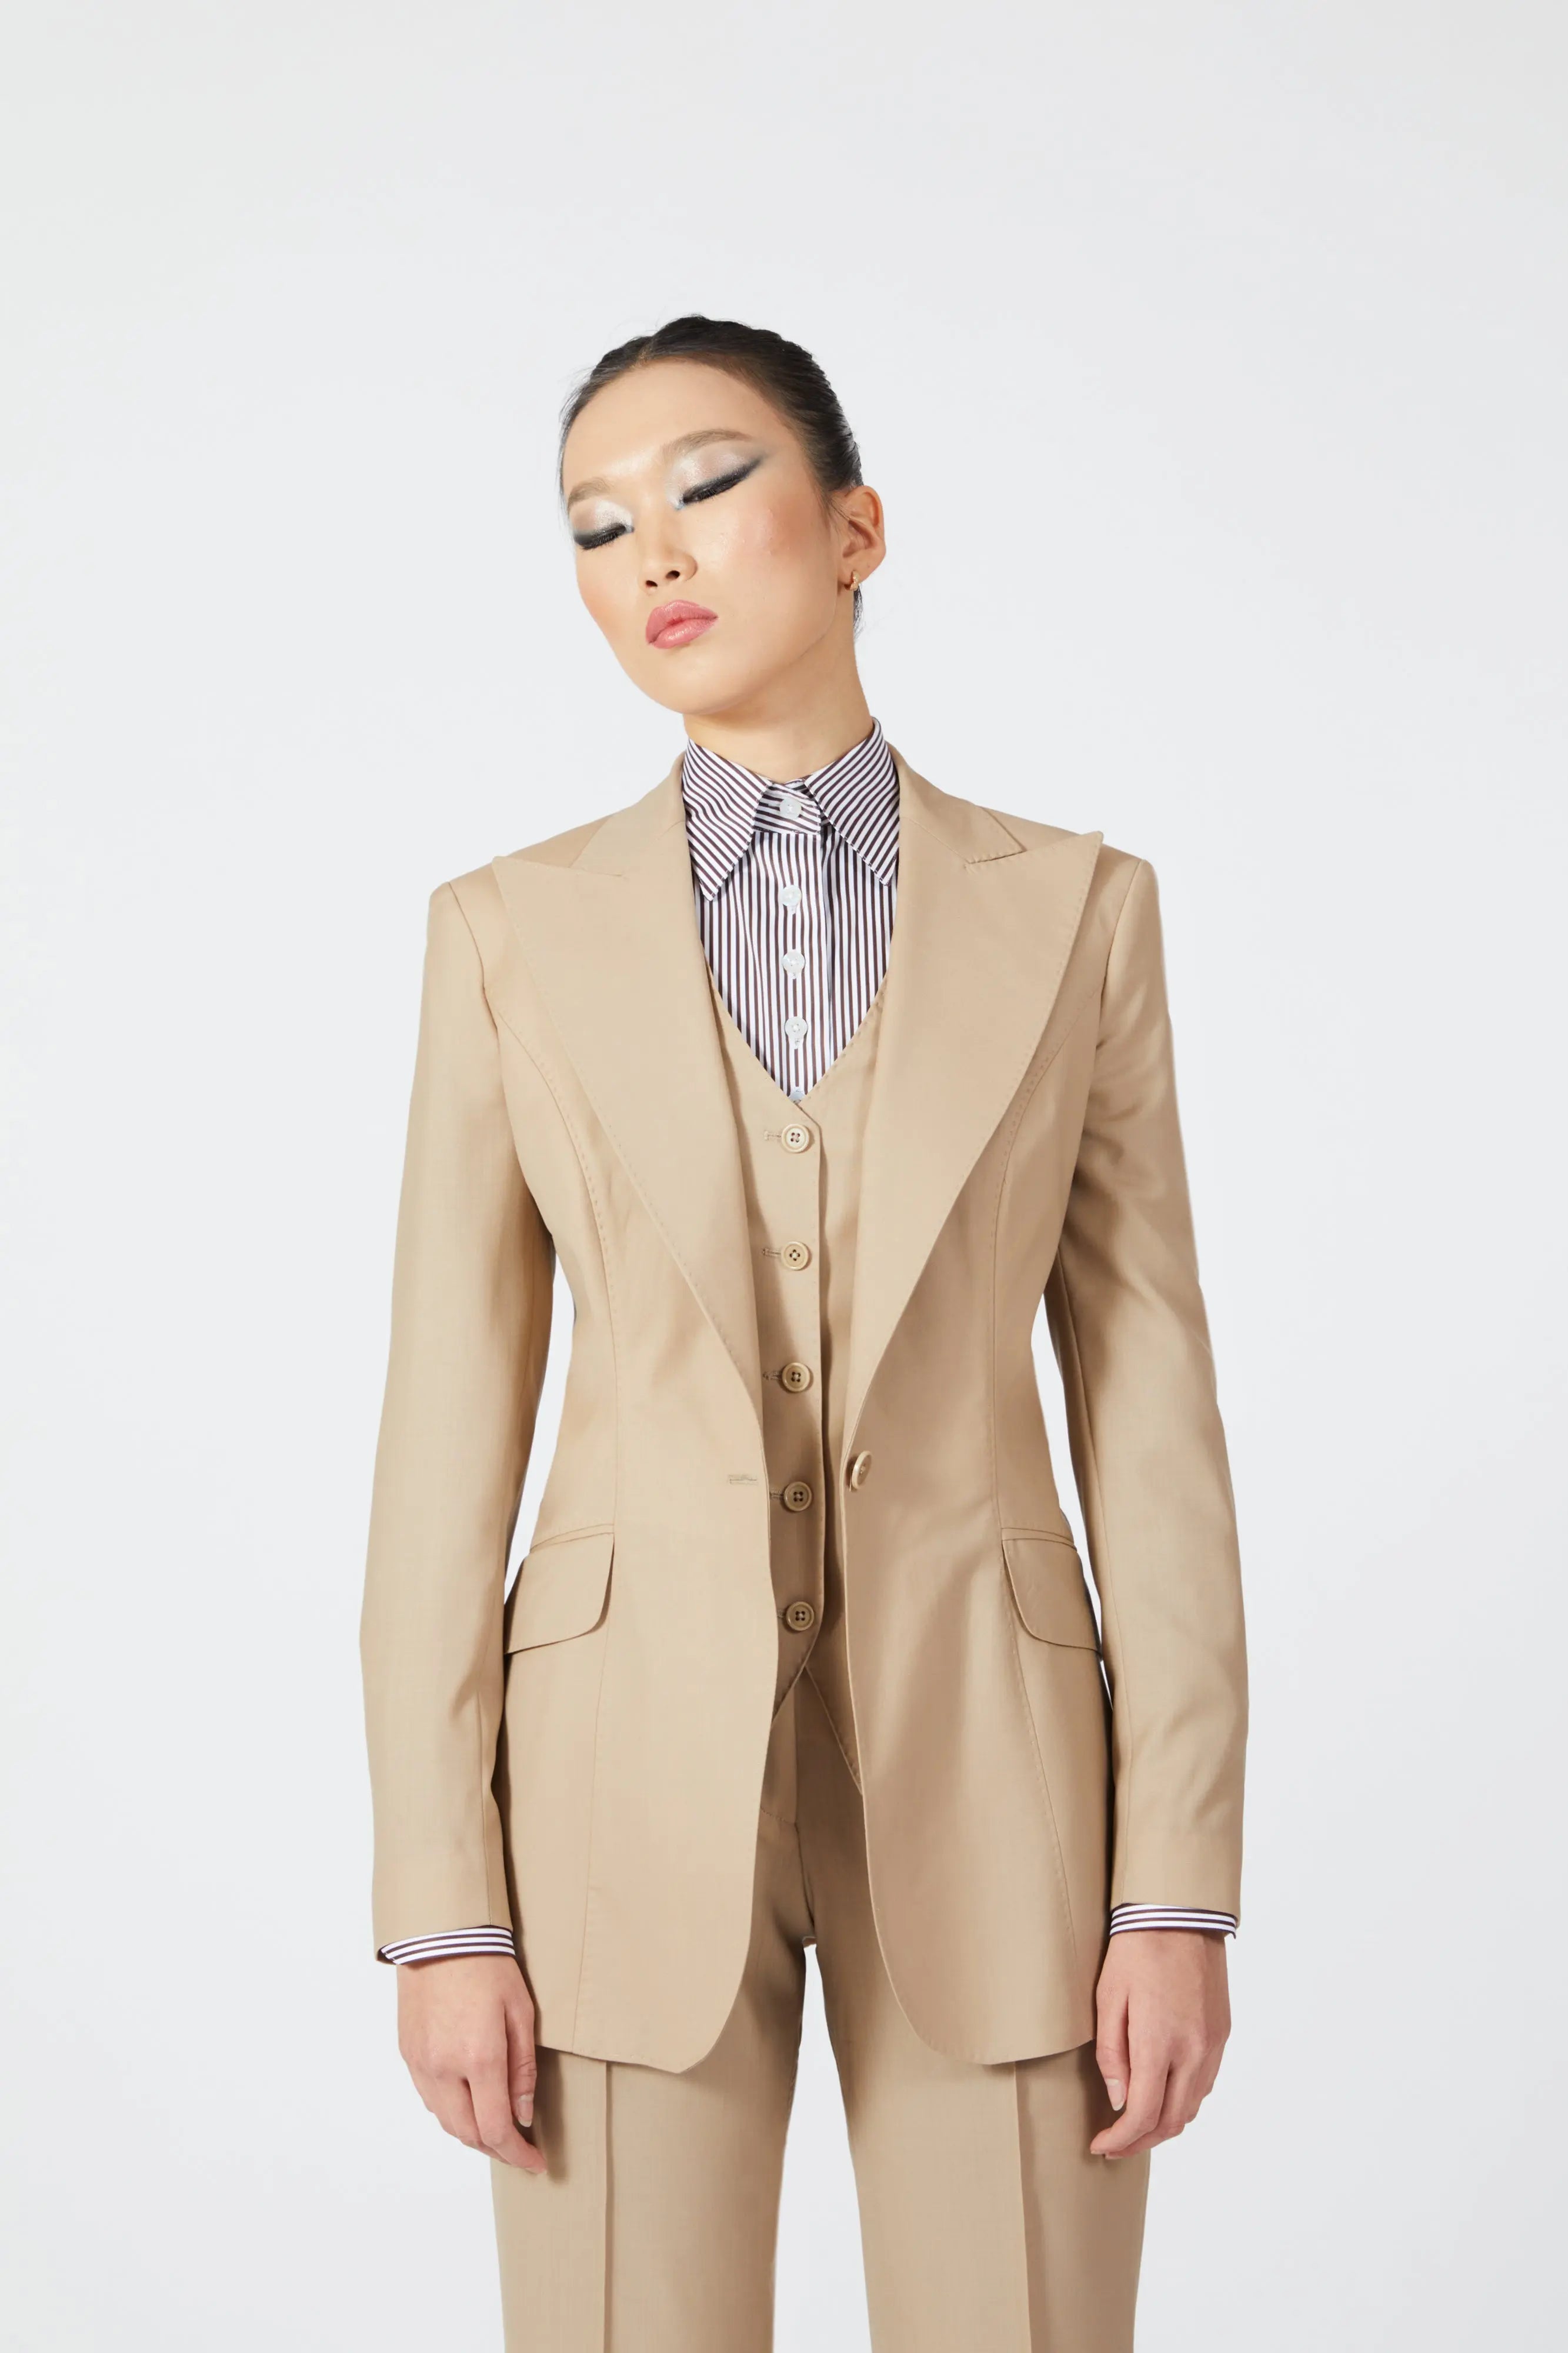 Kay Single Breasted Suit with Waistcoat - Alexandra-Dobre.com